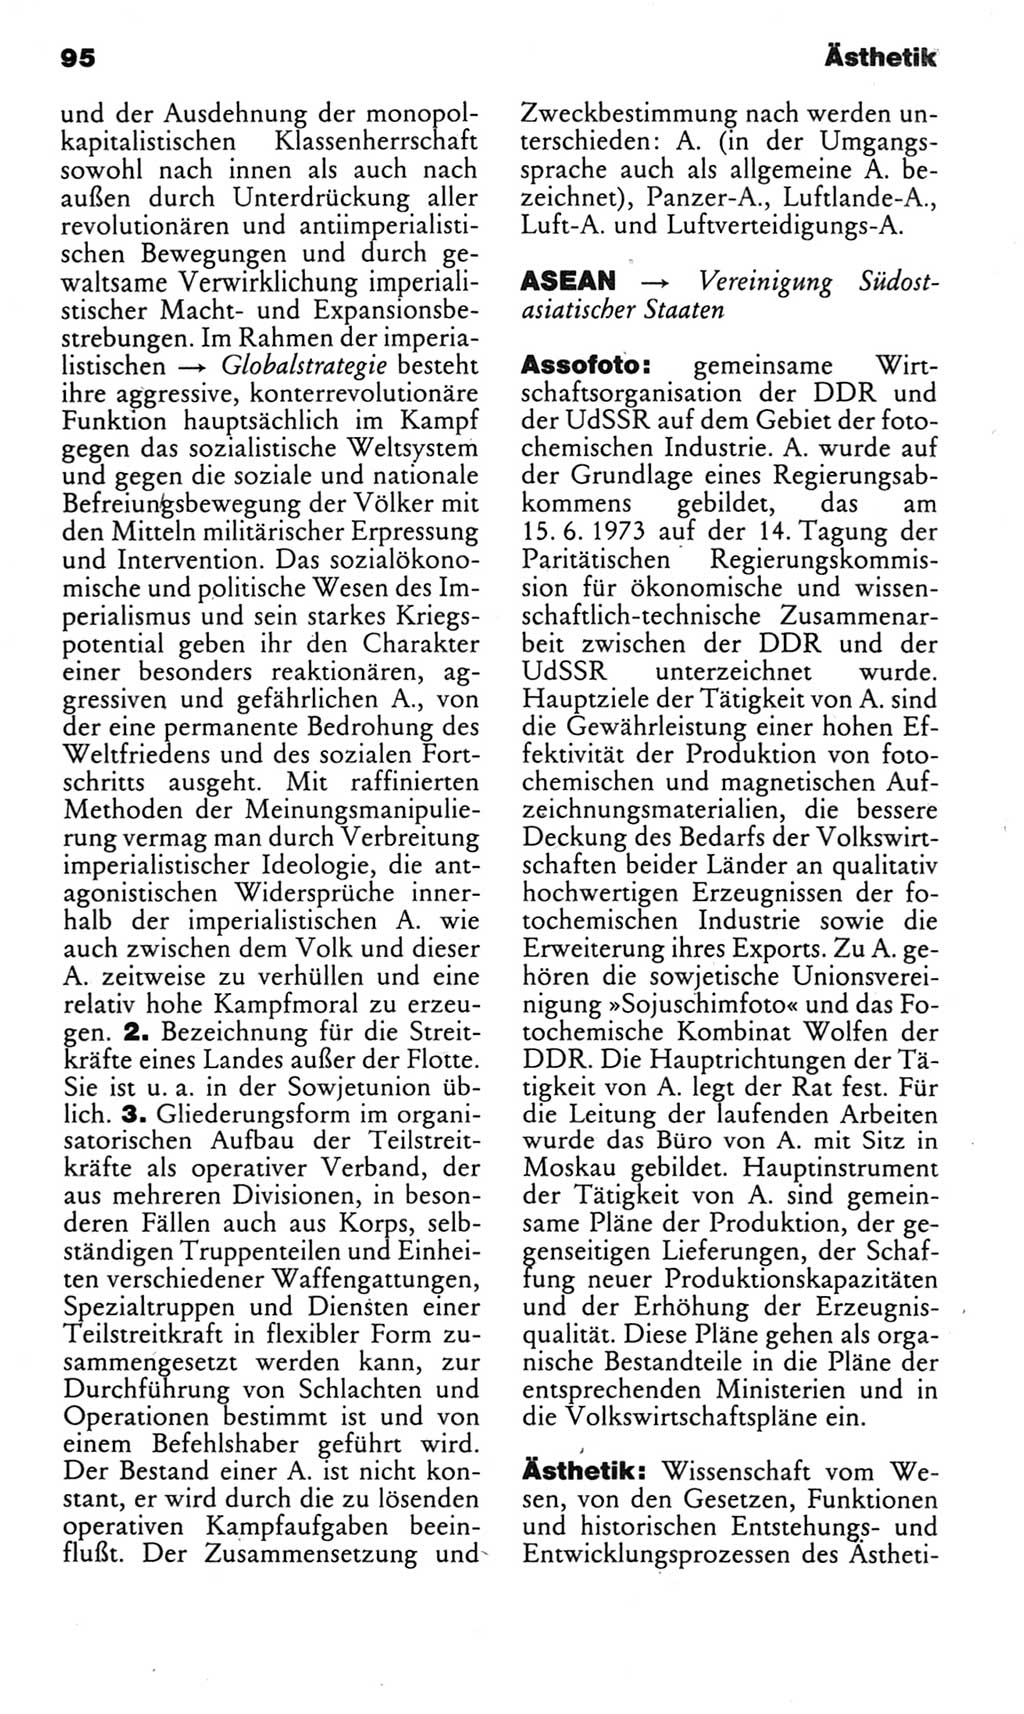 Kleines politisches Wörterbuch [Deutsche Demokratische Republik (DDR)] 1985, Seite 95 (Kl. pol. Wb. DDR 1985, S. 95)